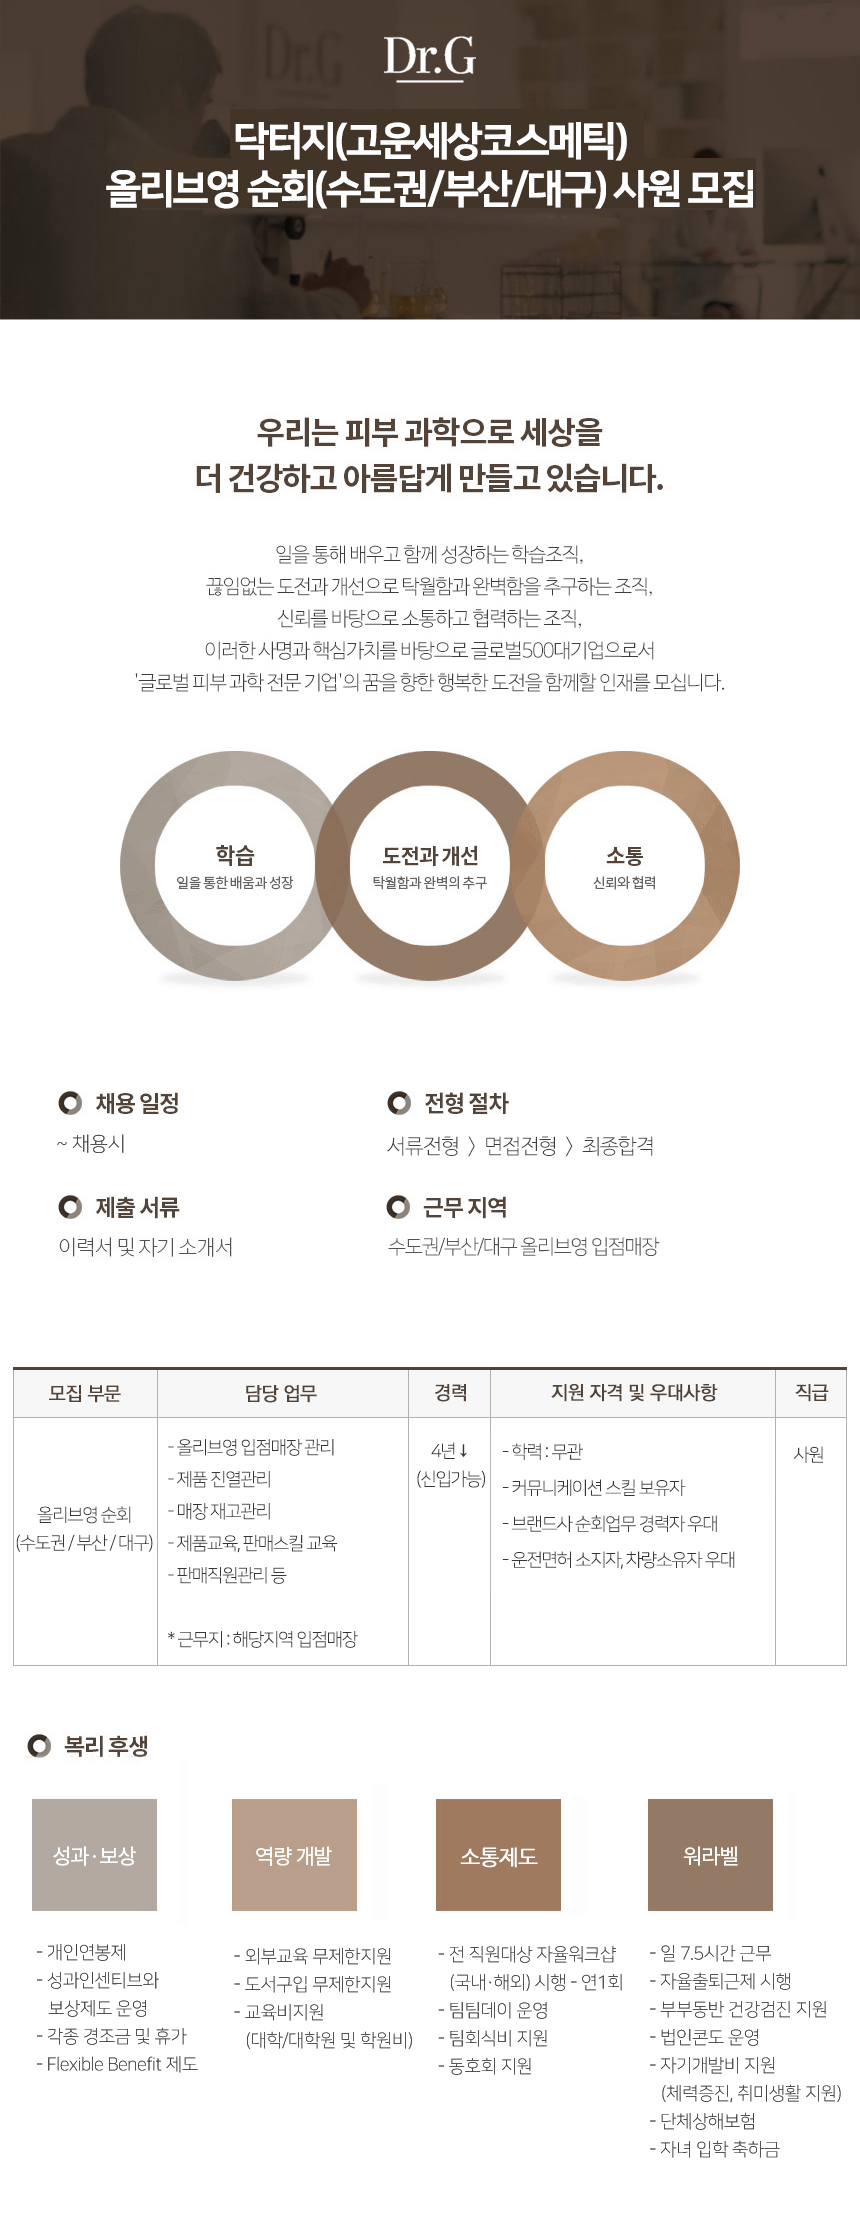 닥터지(고운세상코스메틱) 올리브영 순회(수도권/부산/대구) 모집